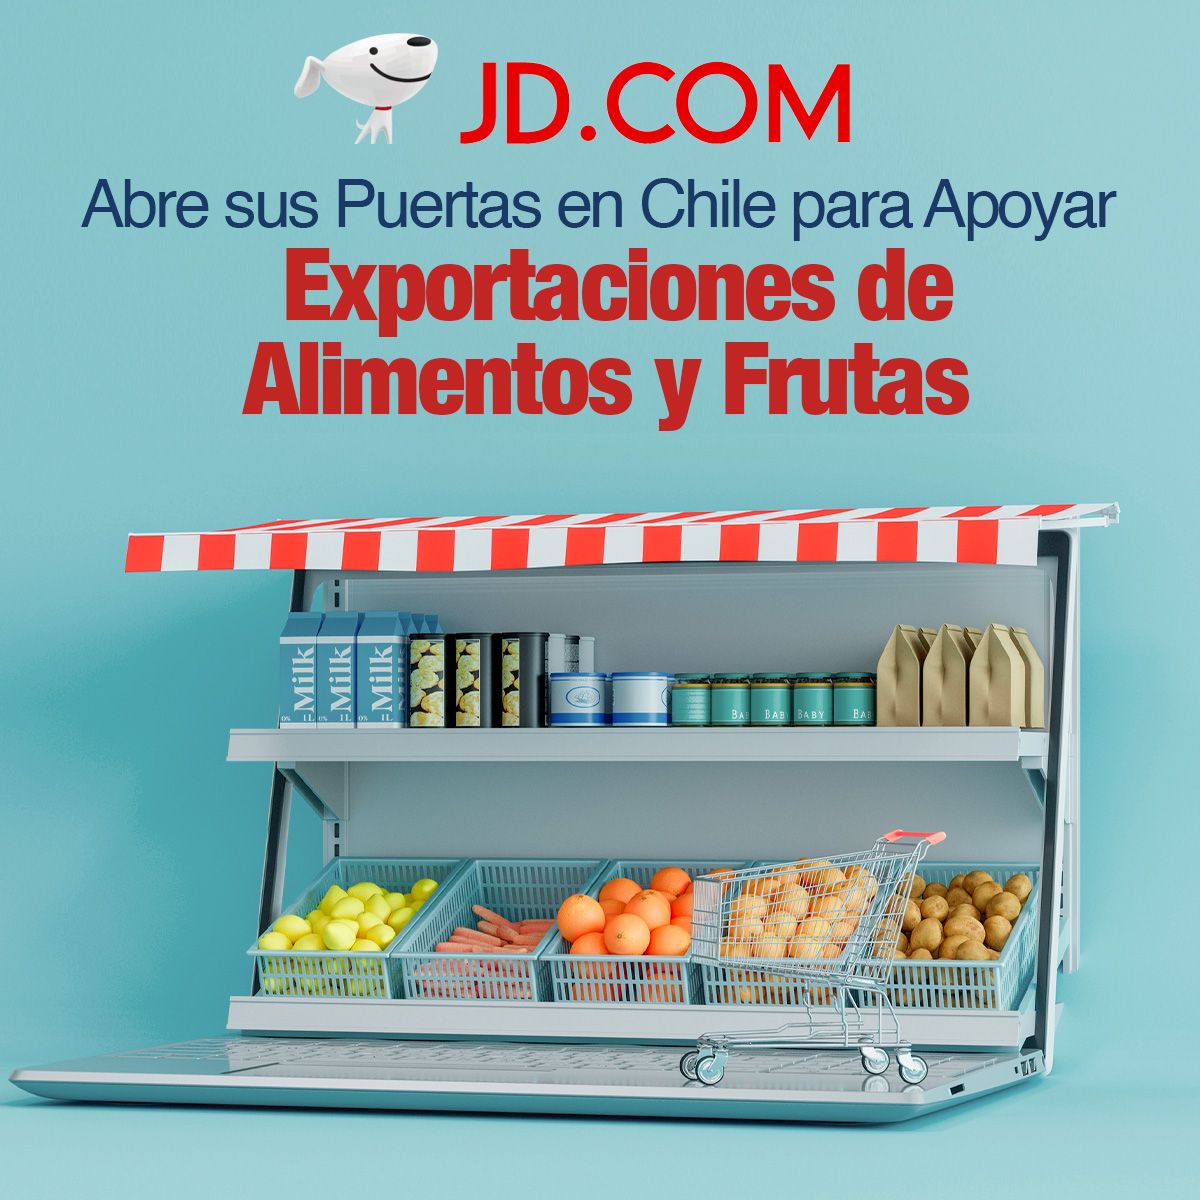 JD.com Abre sus Puertas en Chile para Apoyar Exportaciones de Alimentos y Frutas